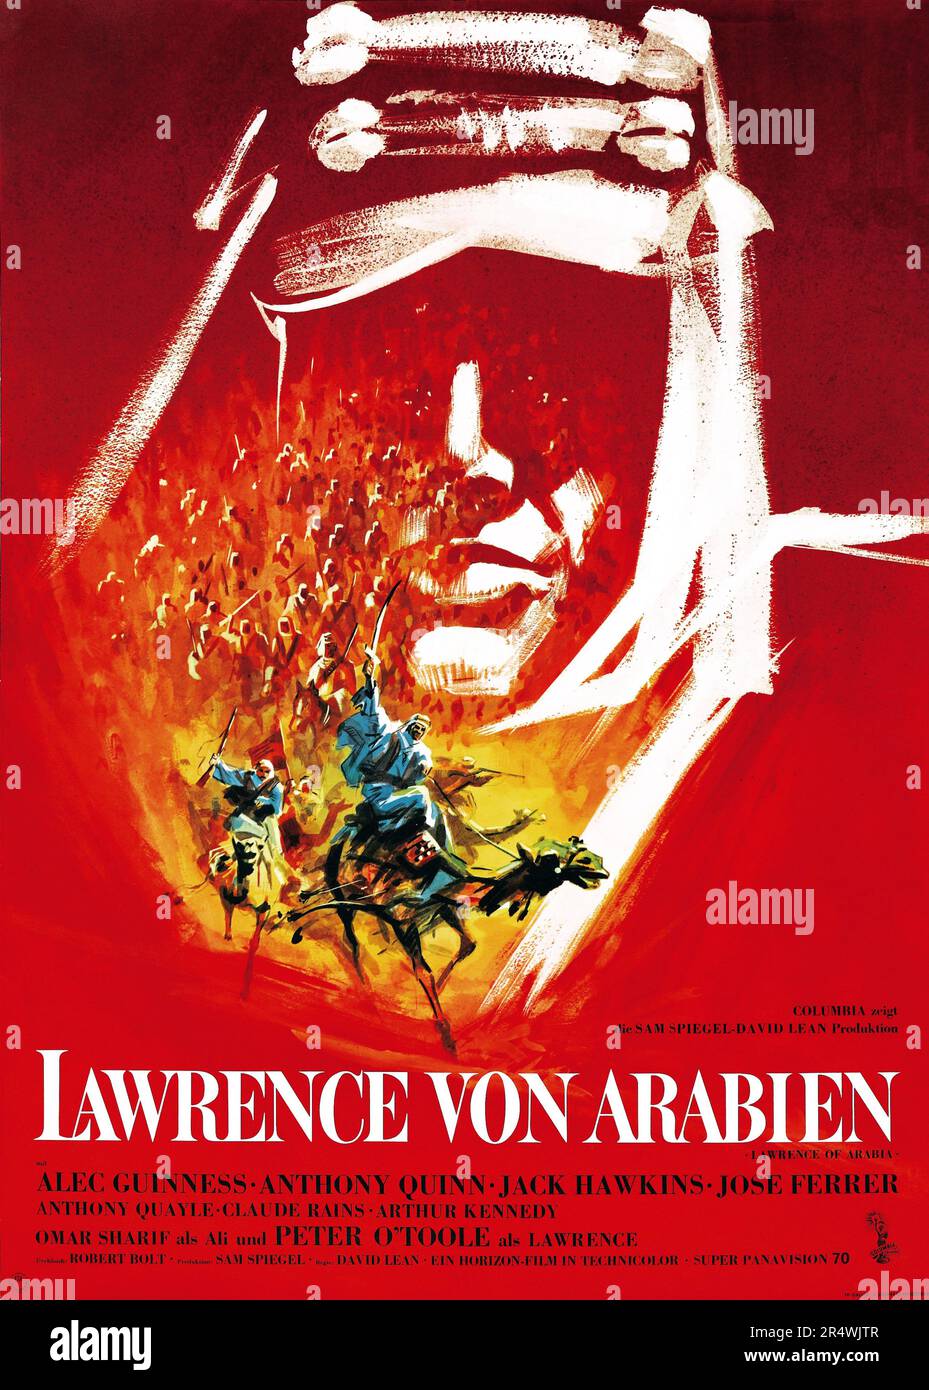 Lawrence d'Arabia è un britannico 1962 avventura epica film di fiction basata sulla vita di T. E. Lawrence. È stato diretto da David Lean e stelle di Peter O'Toole nel ruolo del titolo. È ampiamente considerato uno dei più grandi e influenti film nella storia del cinema. Foto Stock